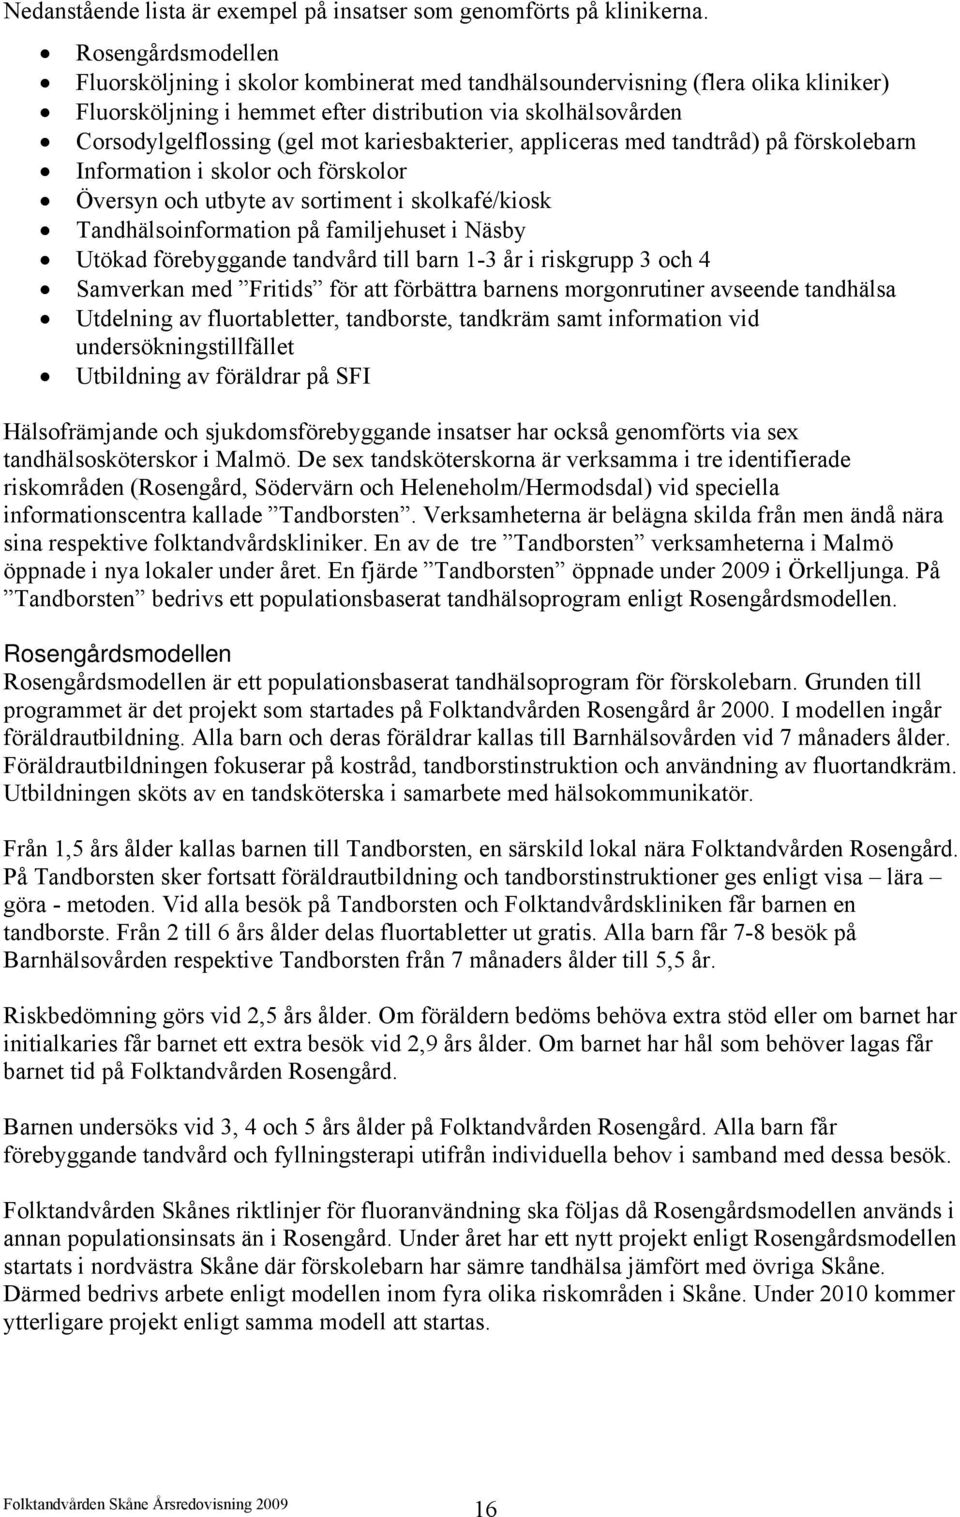 en milstolpe. Välkommen till Framtiden Folktandvården! Helena Ozolins  Tandvårdschef Folktandvården Skåne - PDF Free Download